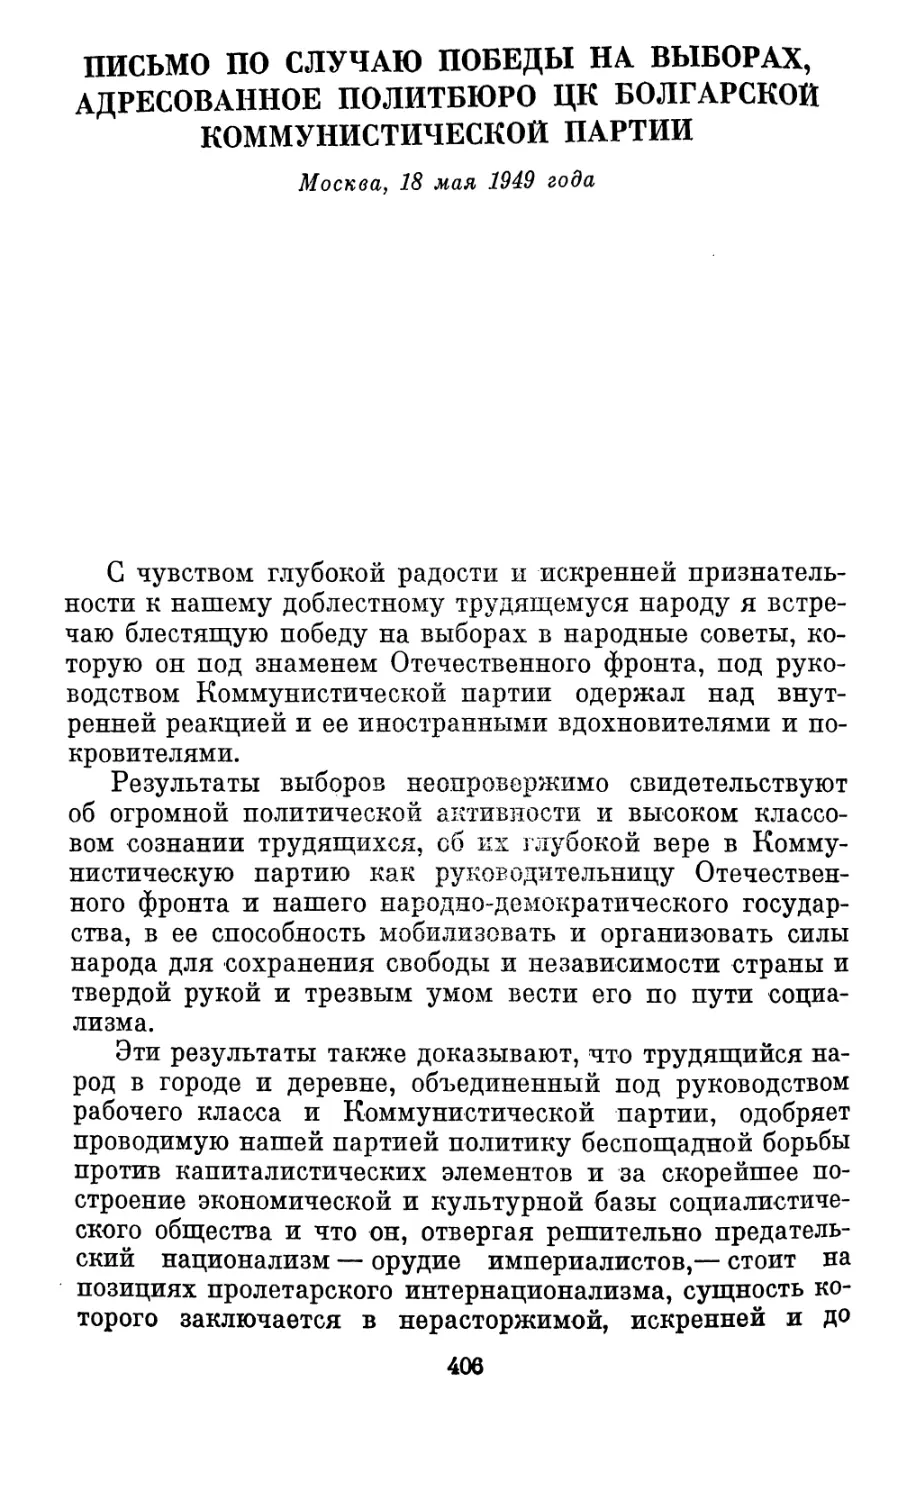 Письмо по случаю победы на выборах, адресованное Политбюро ЦК Болгарской коммунистической партии. Москва, 18 мая 1949 года